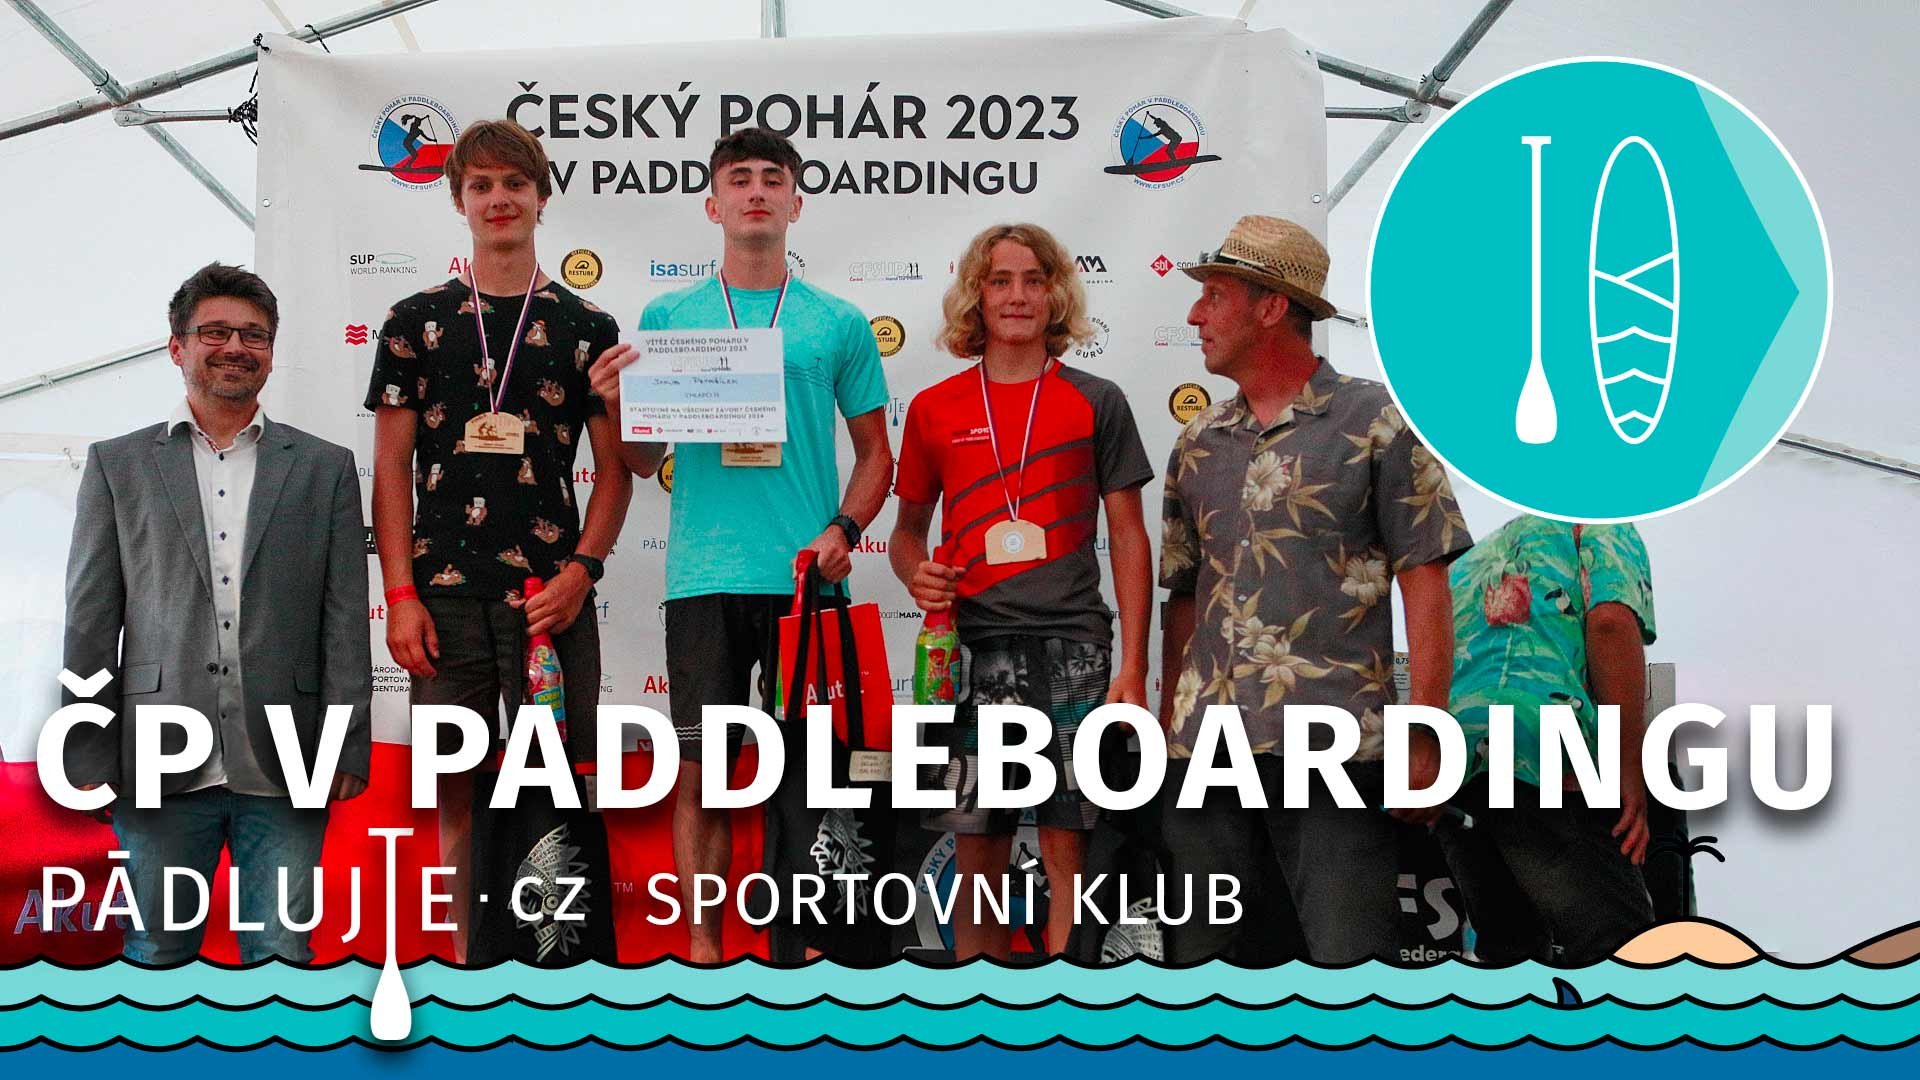 Finále Českého poháru v paddleboardingu Cheb 2023 - Kuba Petržílek vítěz